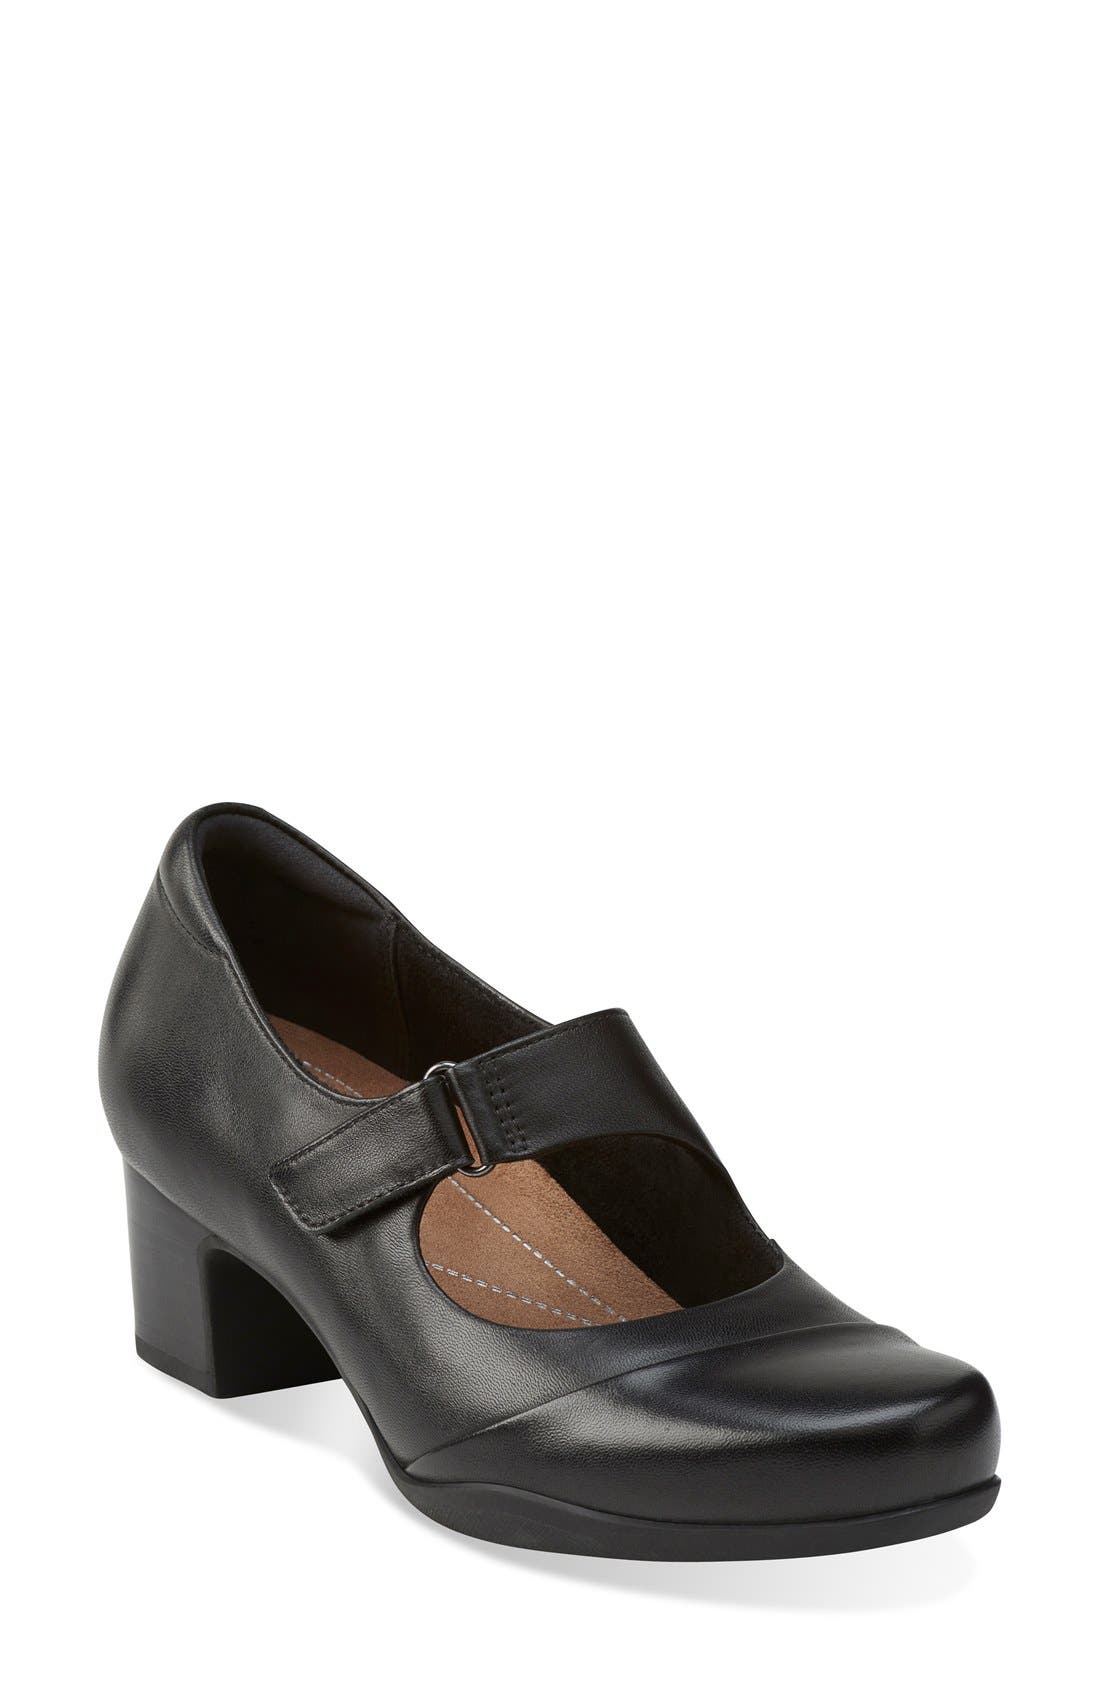 rosalyn wren clarks shoes